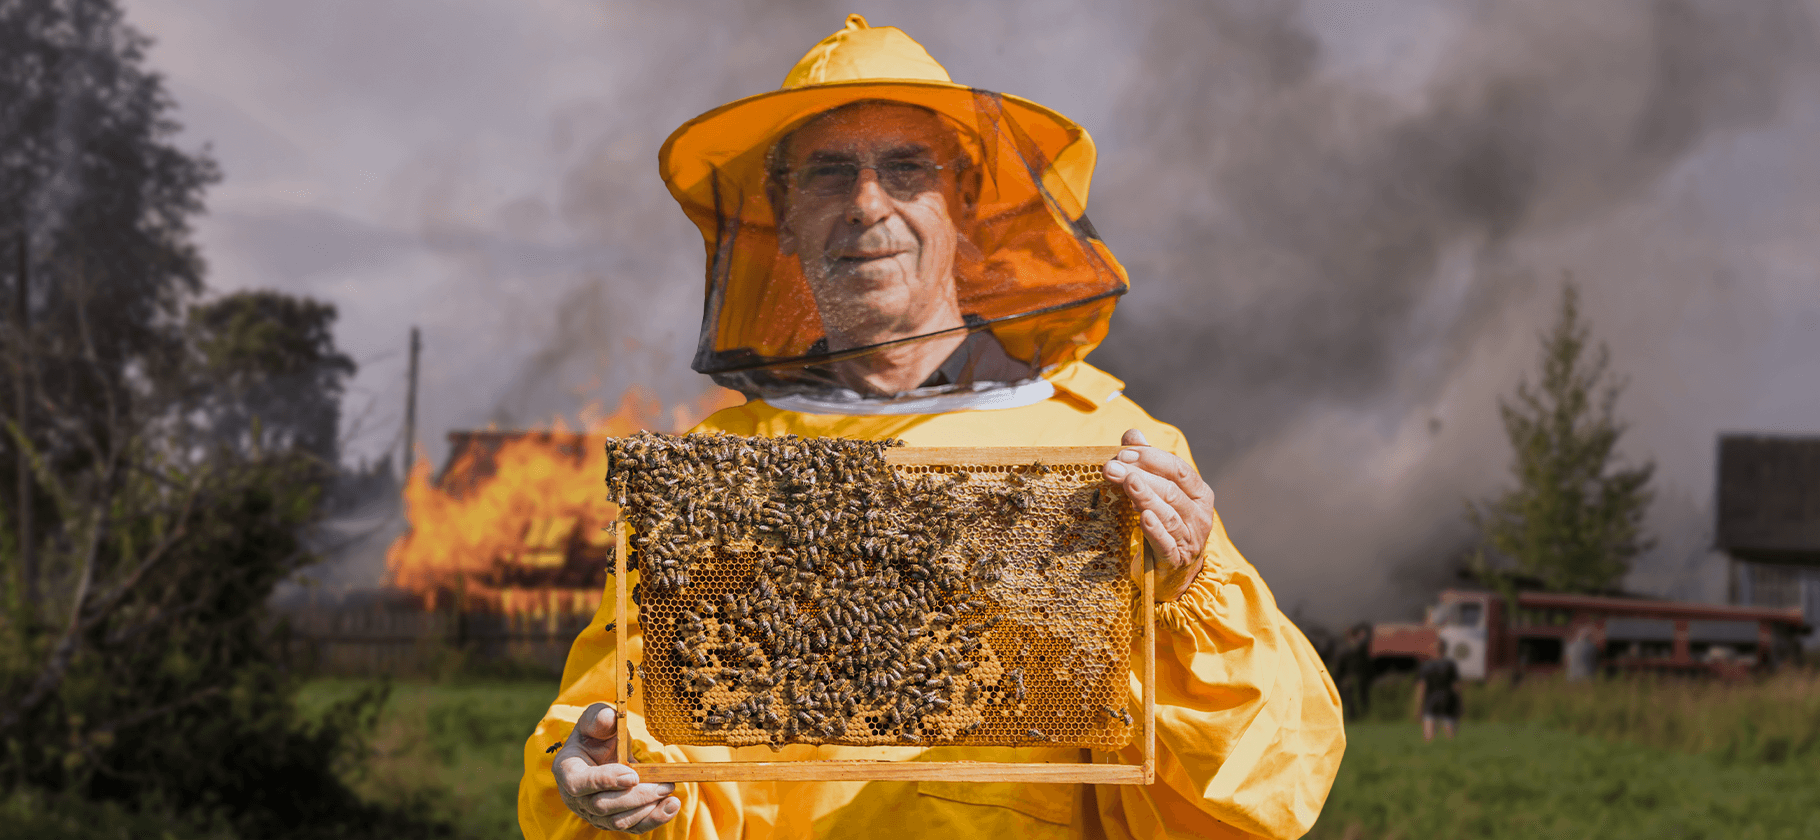 Сгоревший дом и борьба с пчелами: 8 соседских споров, дошедших до суда